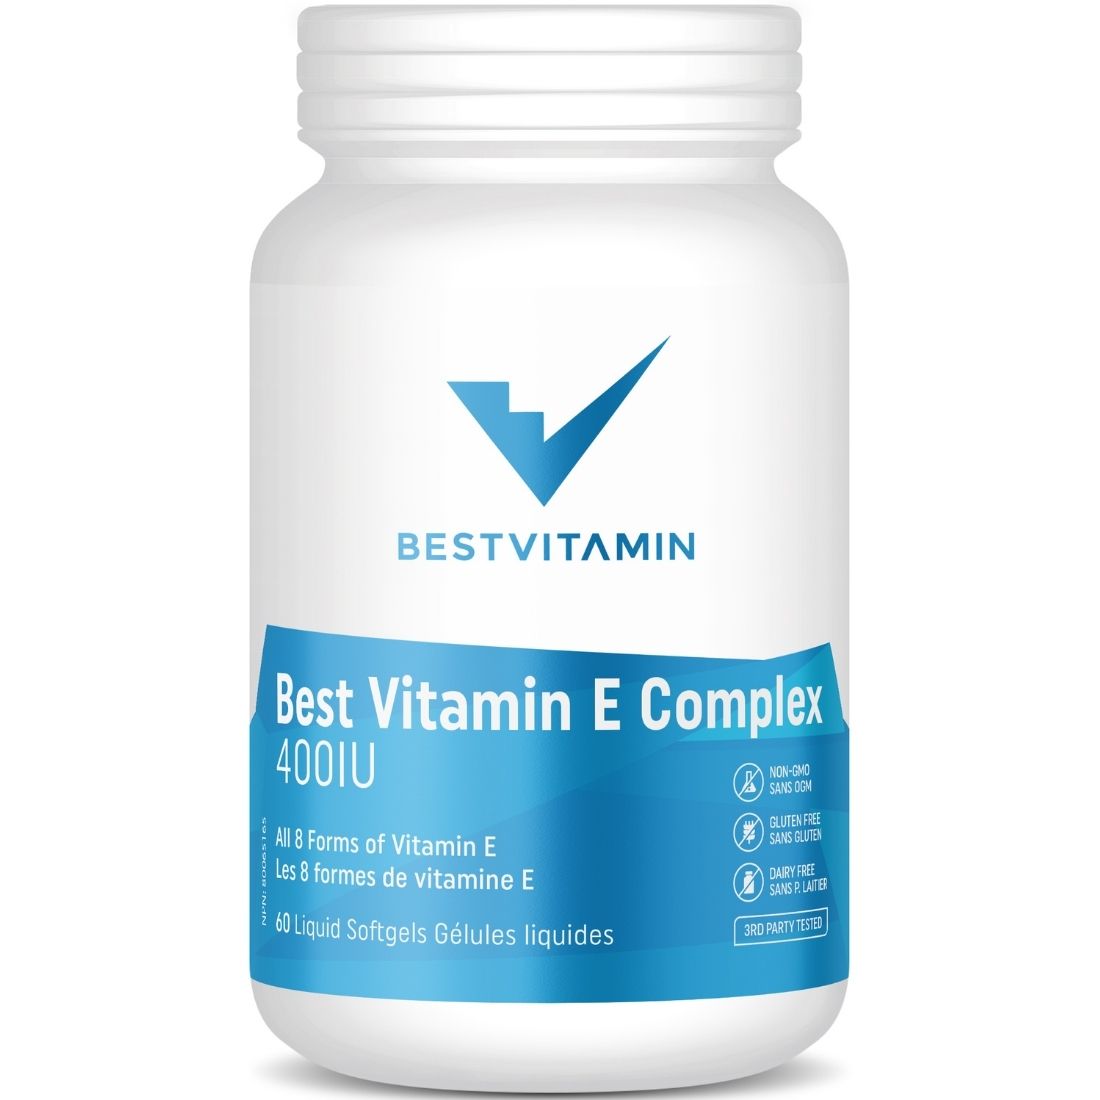 BestVitamin Best Vitamin E Complex 400IU, All 8 Forms of Vitamin E in One Liquid Softgel, Non-GMO